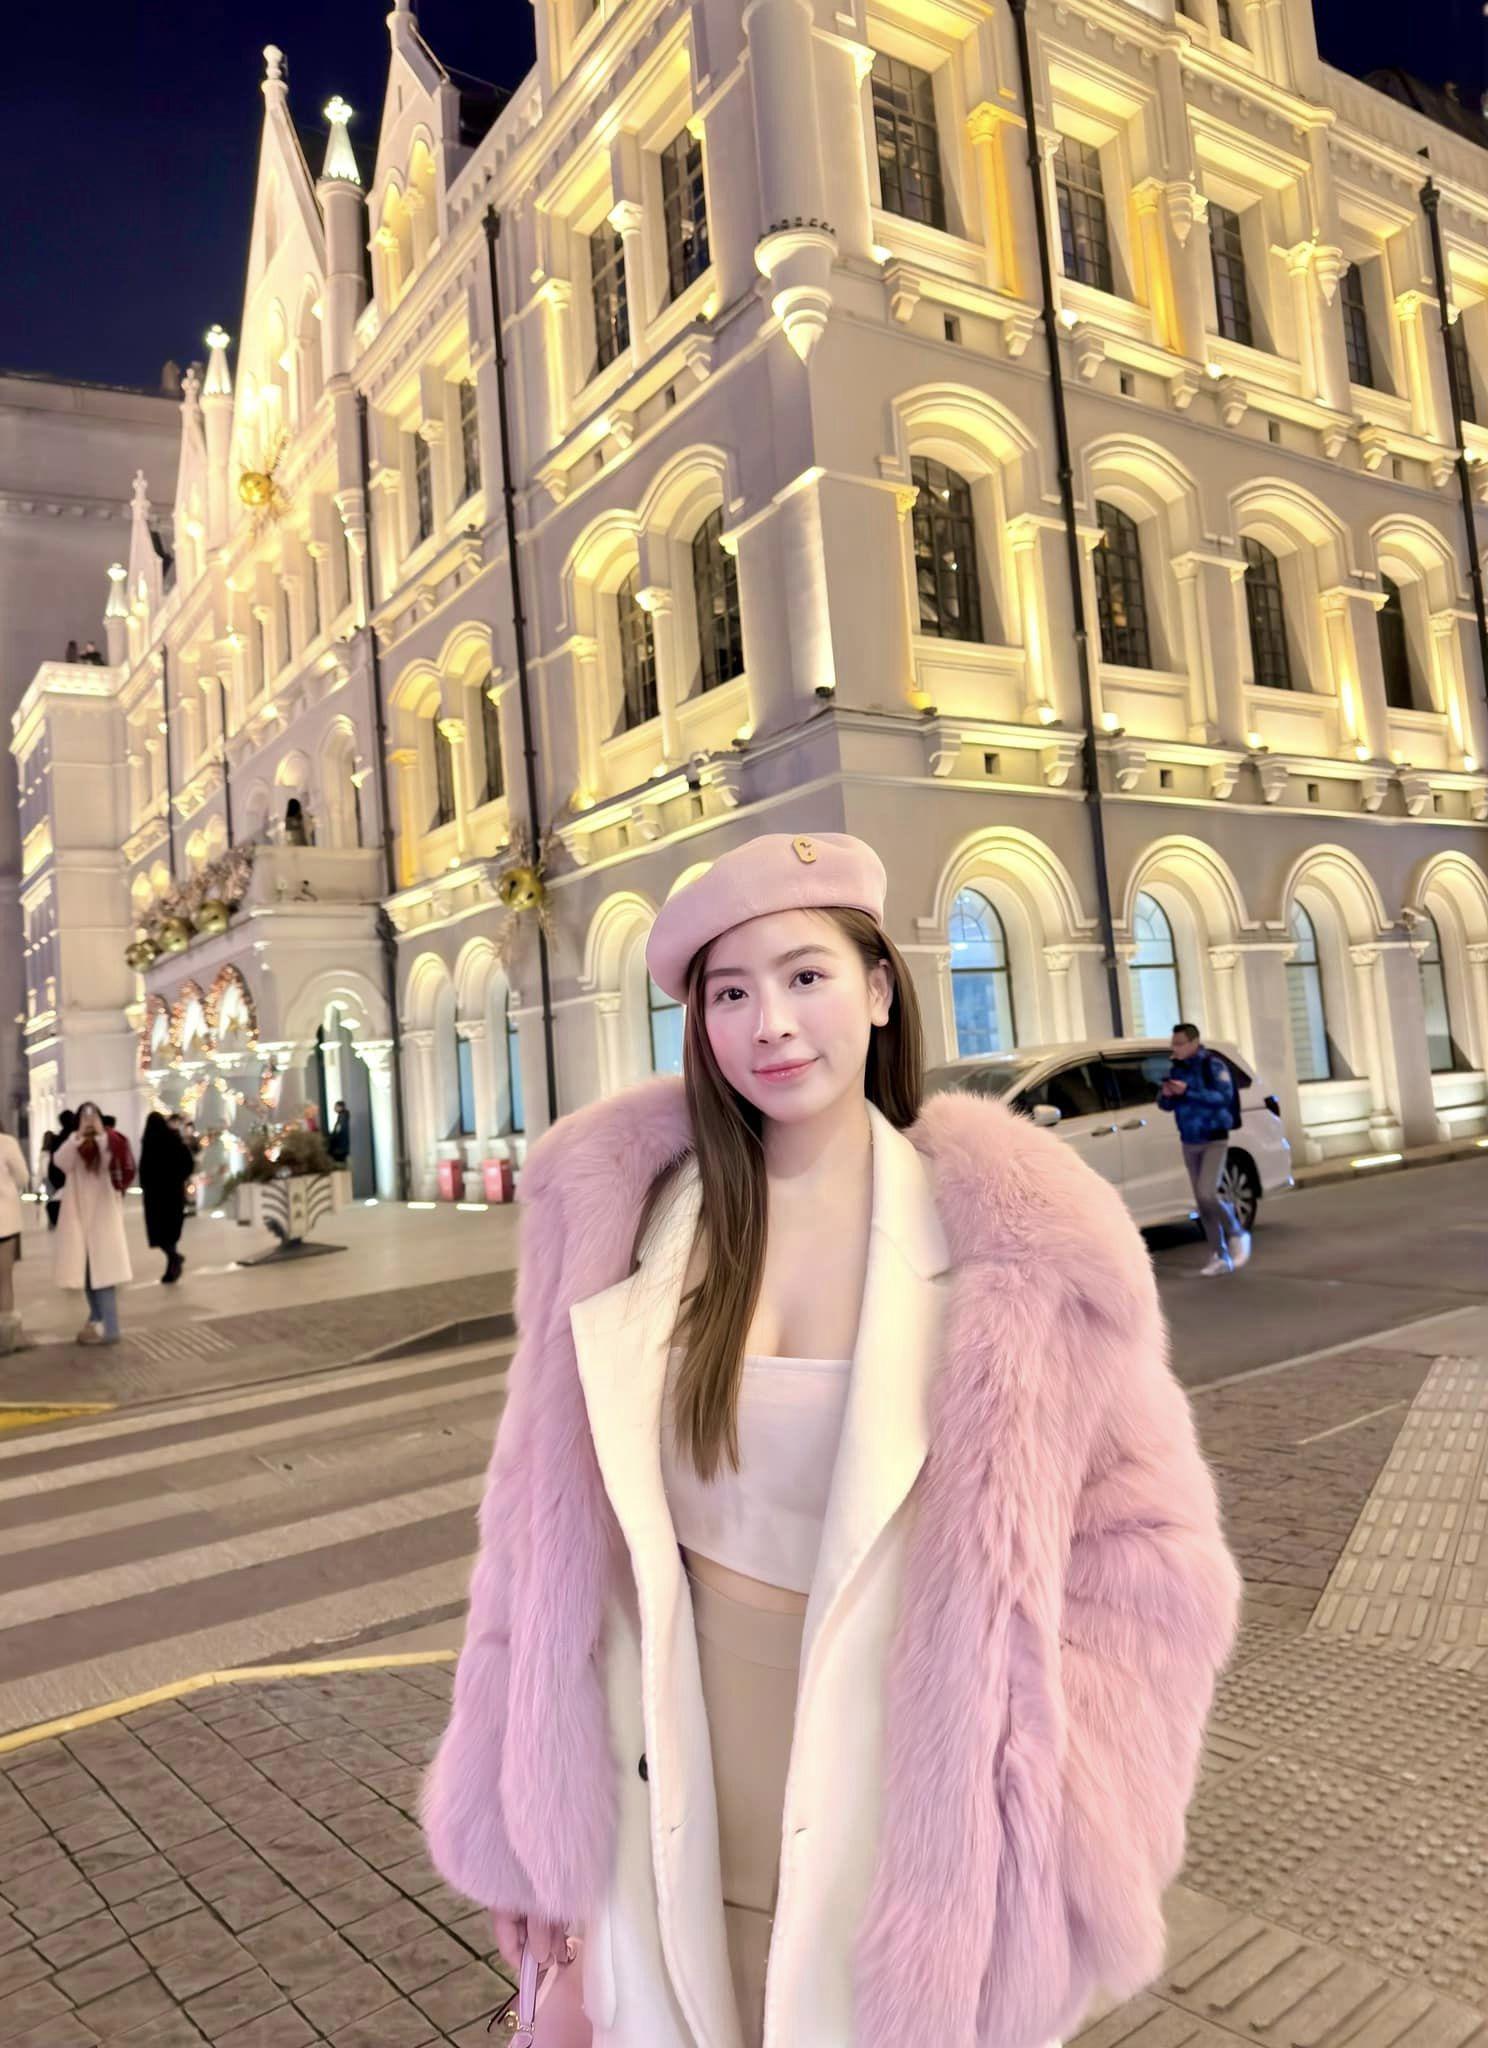 Trong chuyến du lịch Thượng Hải (Trung Quốc) vào tháng 12 vừa qua, mỹ nhân Hà Thành nổi bật trên đường phố với set đồ tông trắng - hồng, ôm sát thân hình. Vì thời tiết lạnh nên cô diện thêm áo khoác lông bên ngoài, kết hợp cùng mũ len.&nbsp;